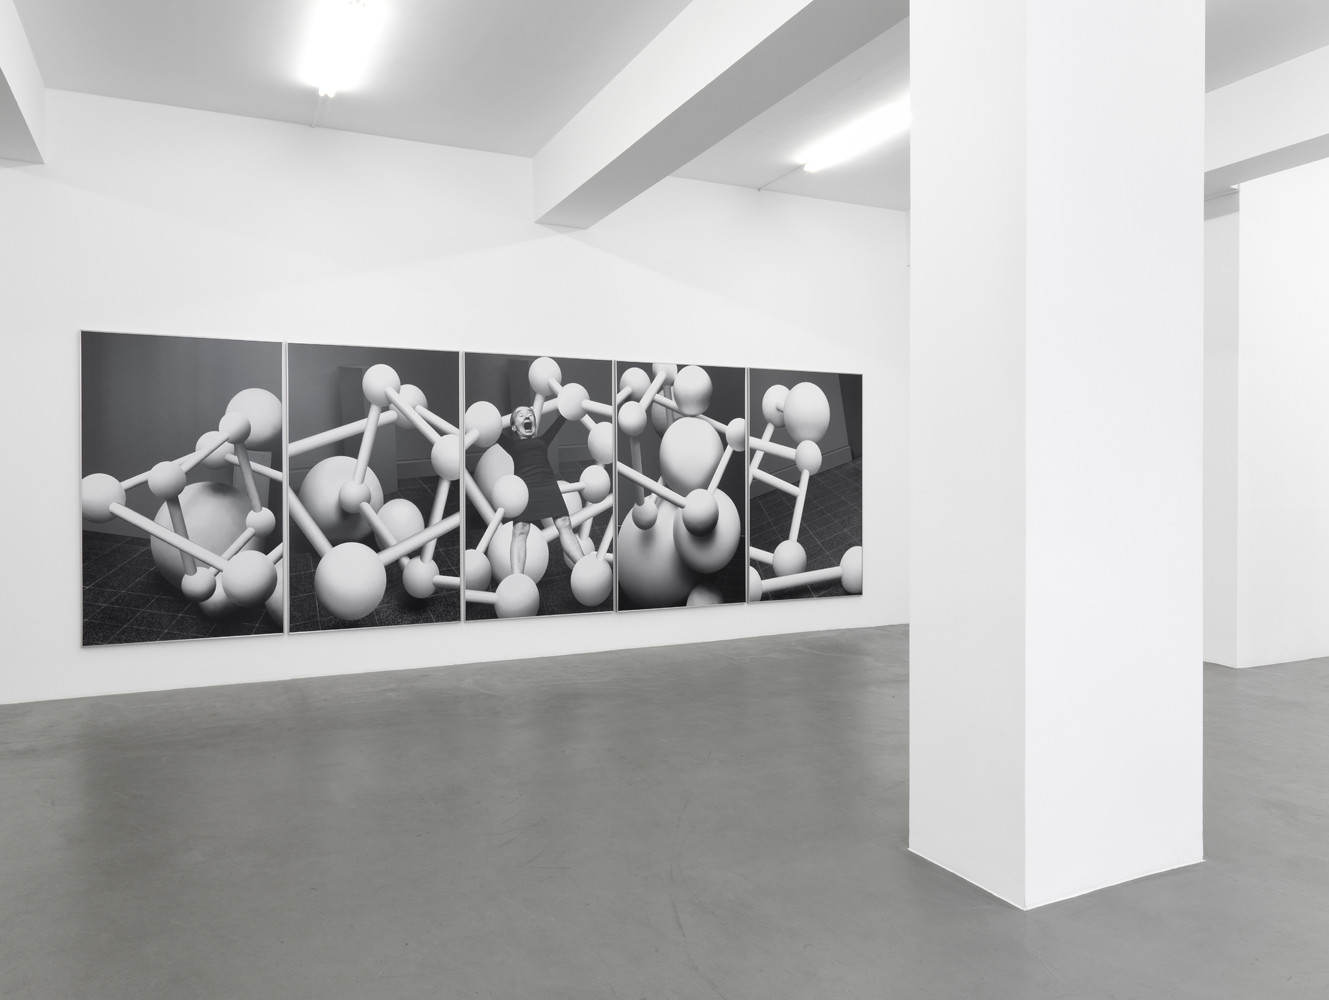 Anna & Bernhard Blume, ‘Aktionsmetaphern’, Installation view, 2011